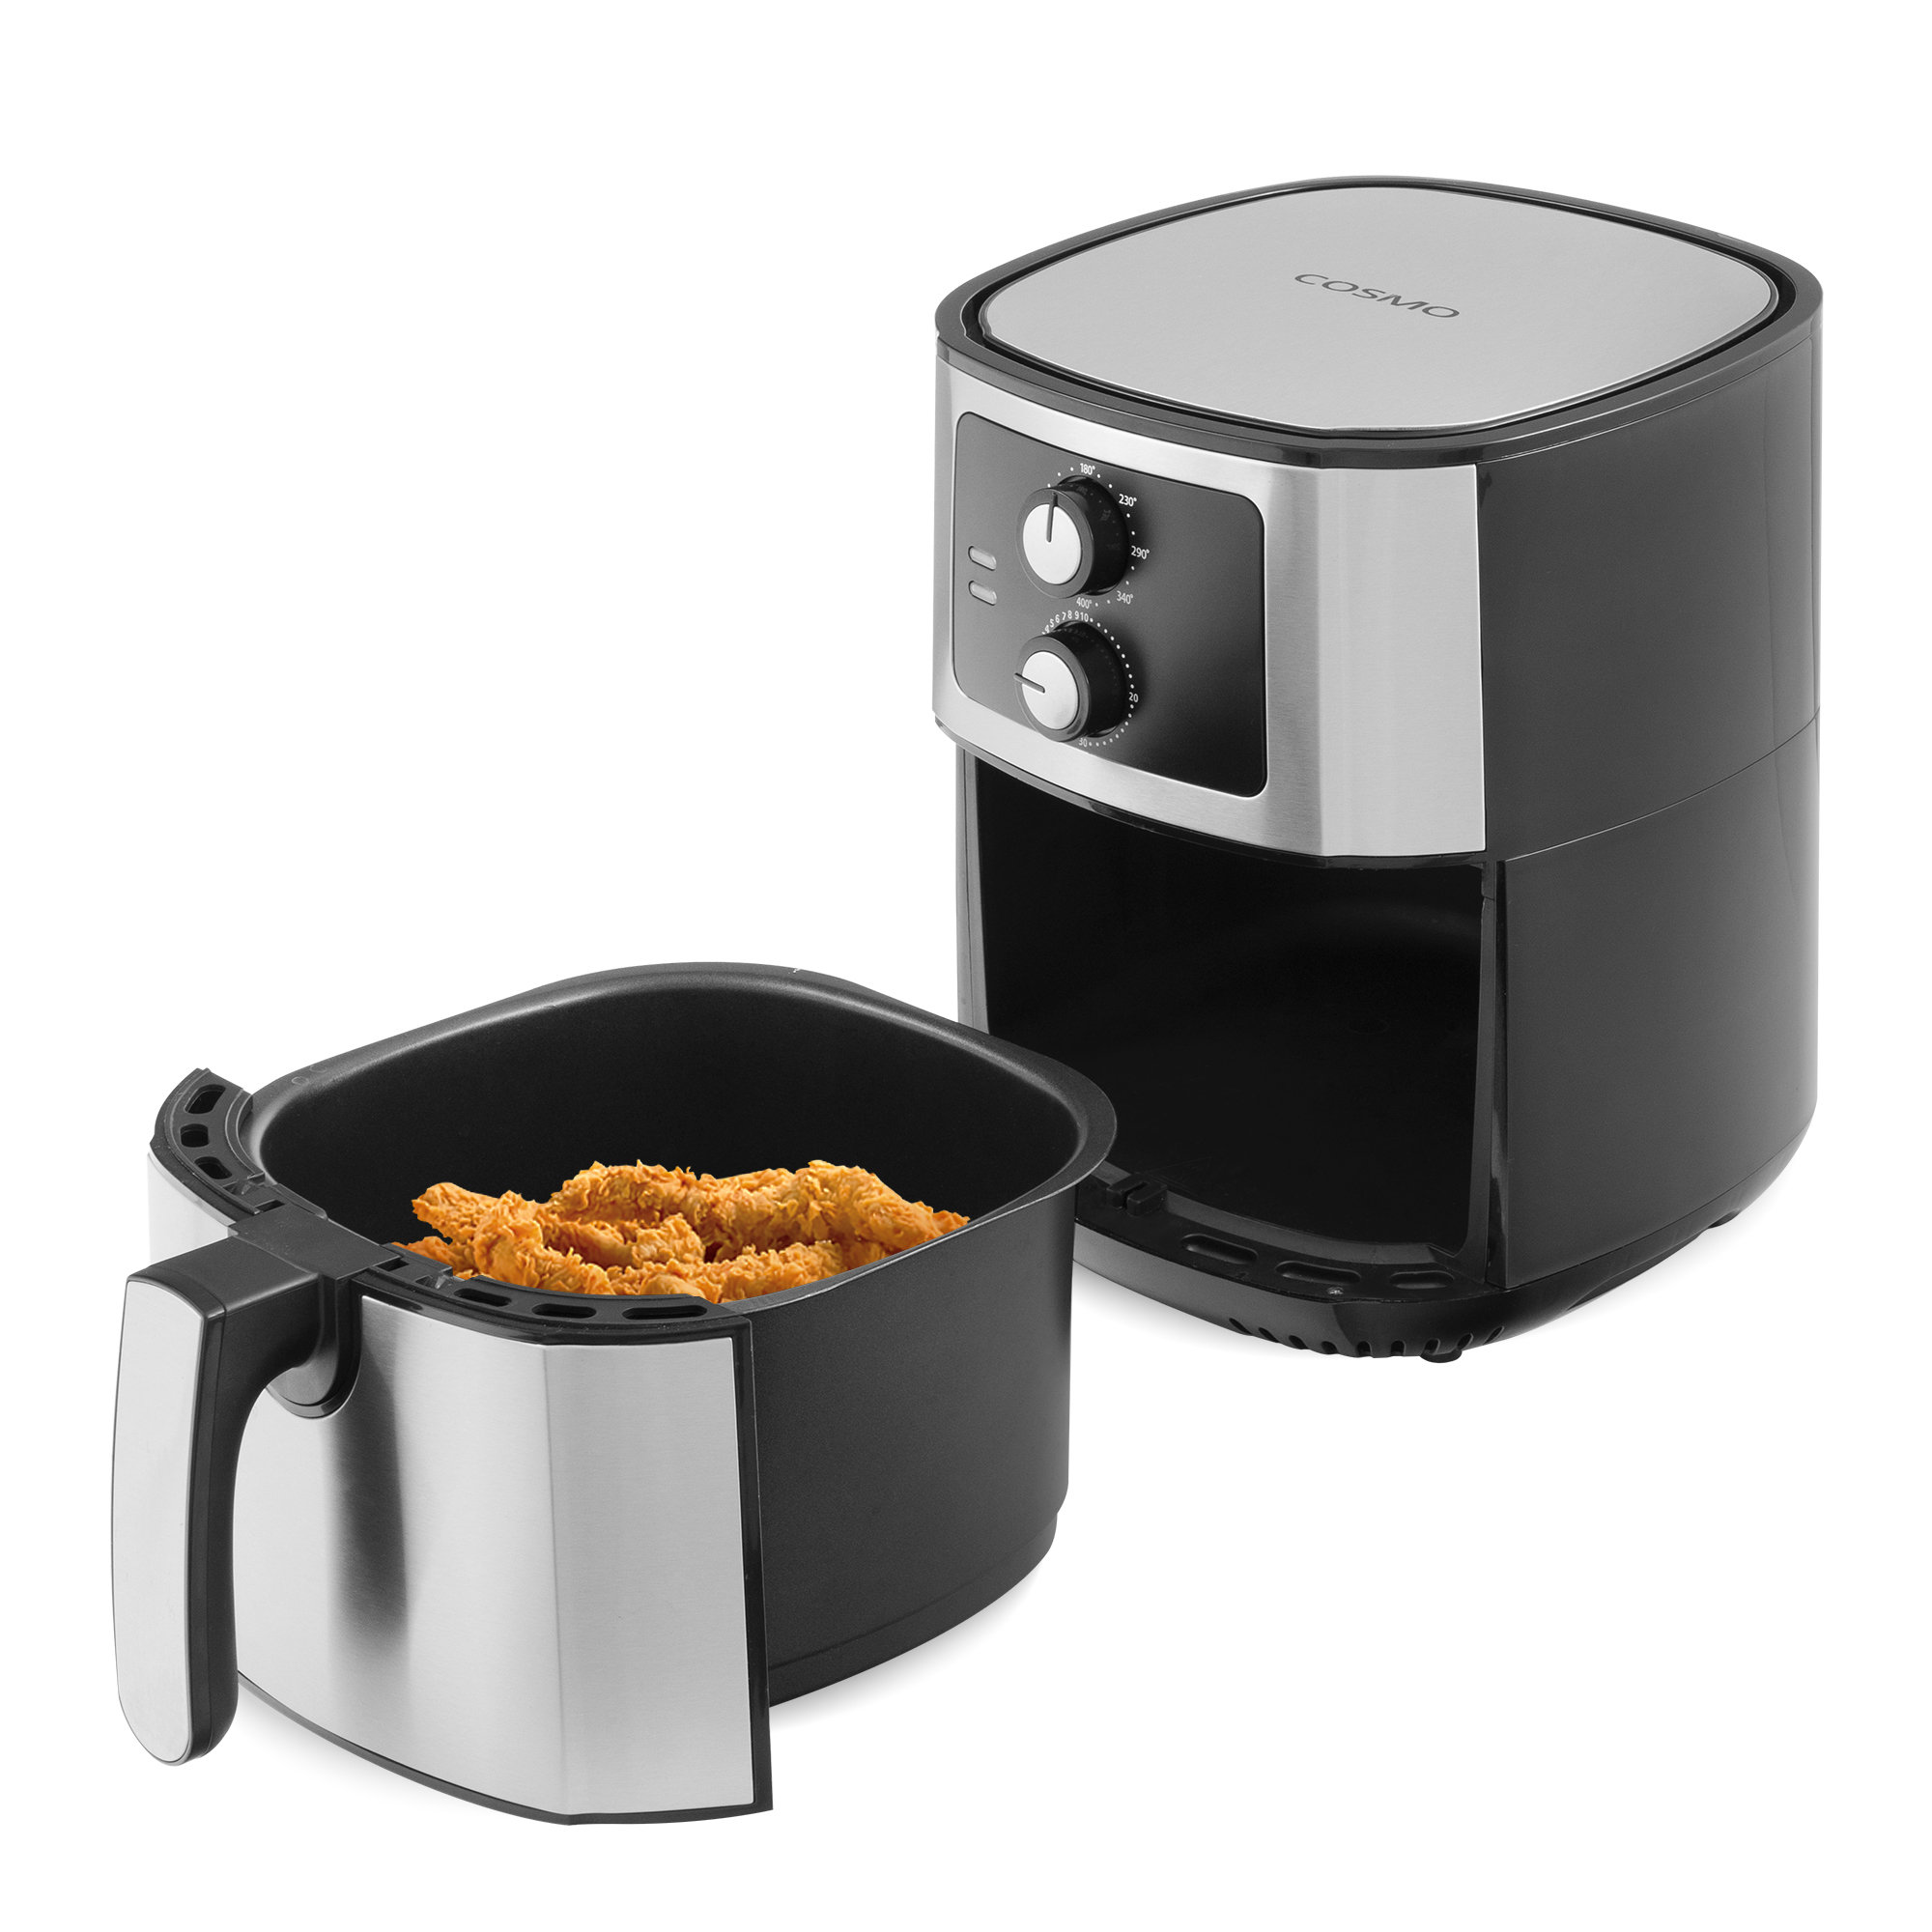 Farberware 3.2 Quart Oil-Less Multi-Functional Air Fryer, Black